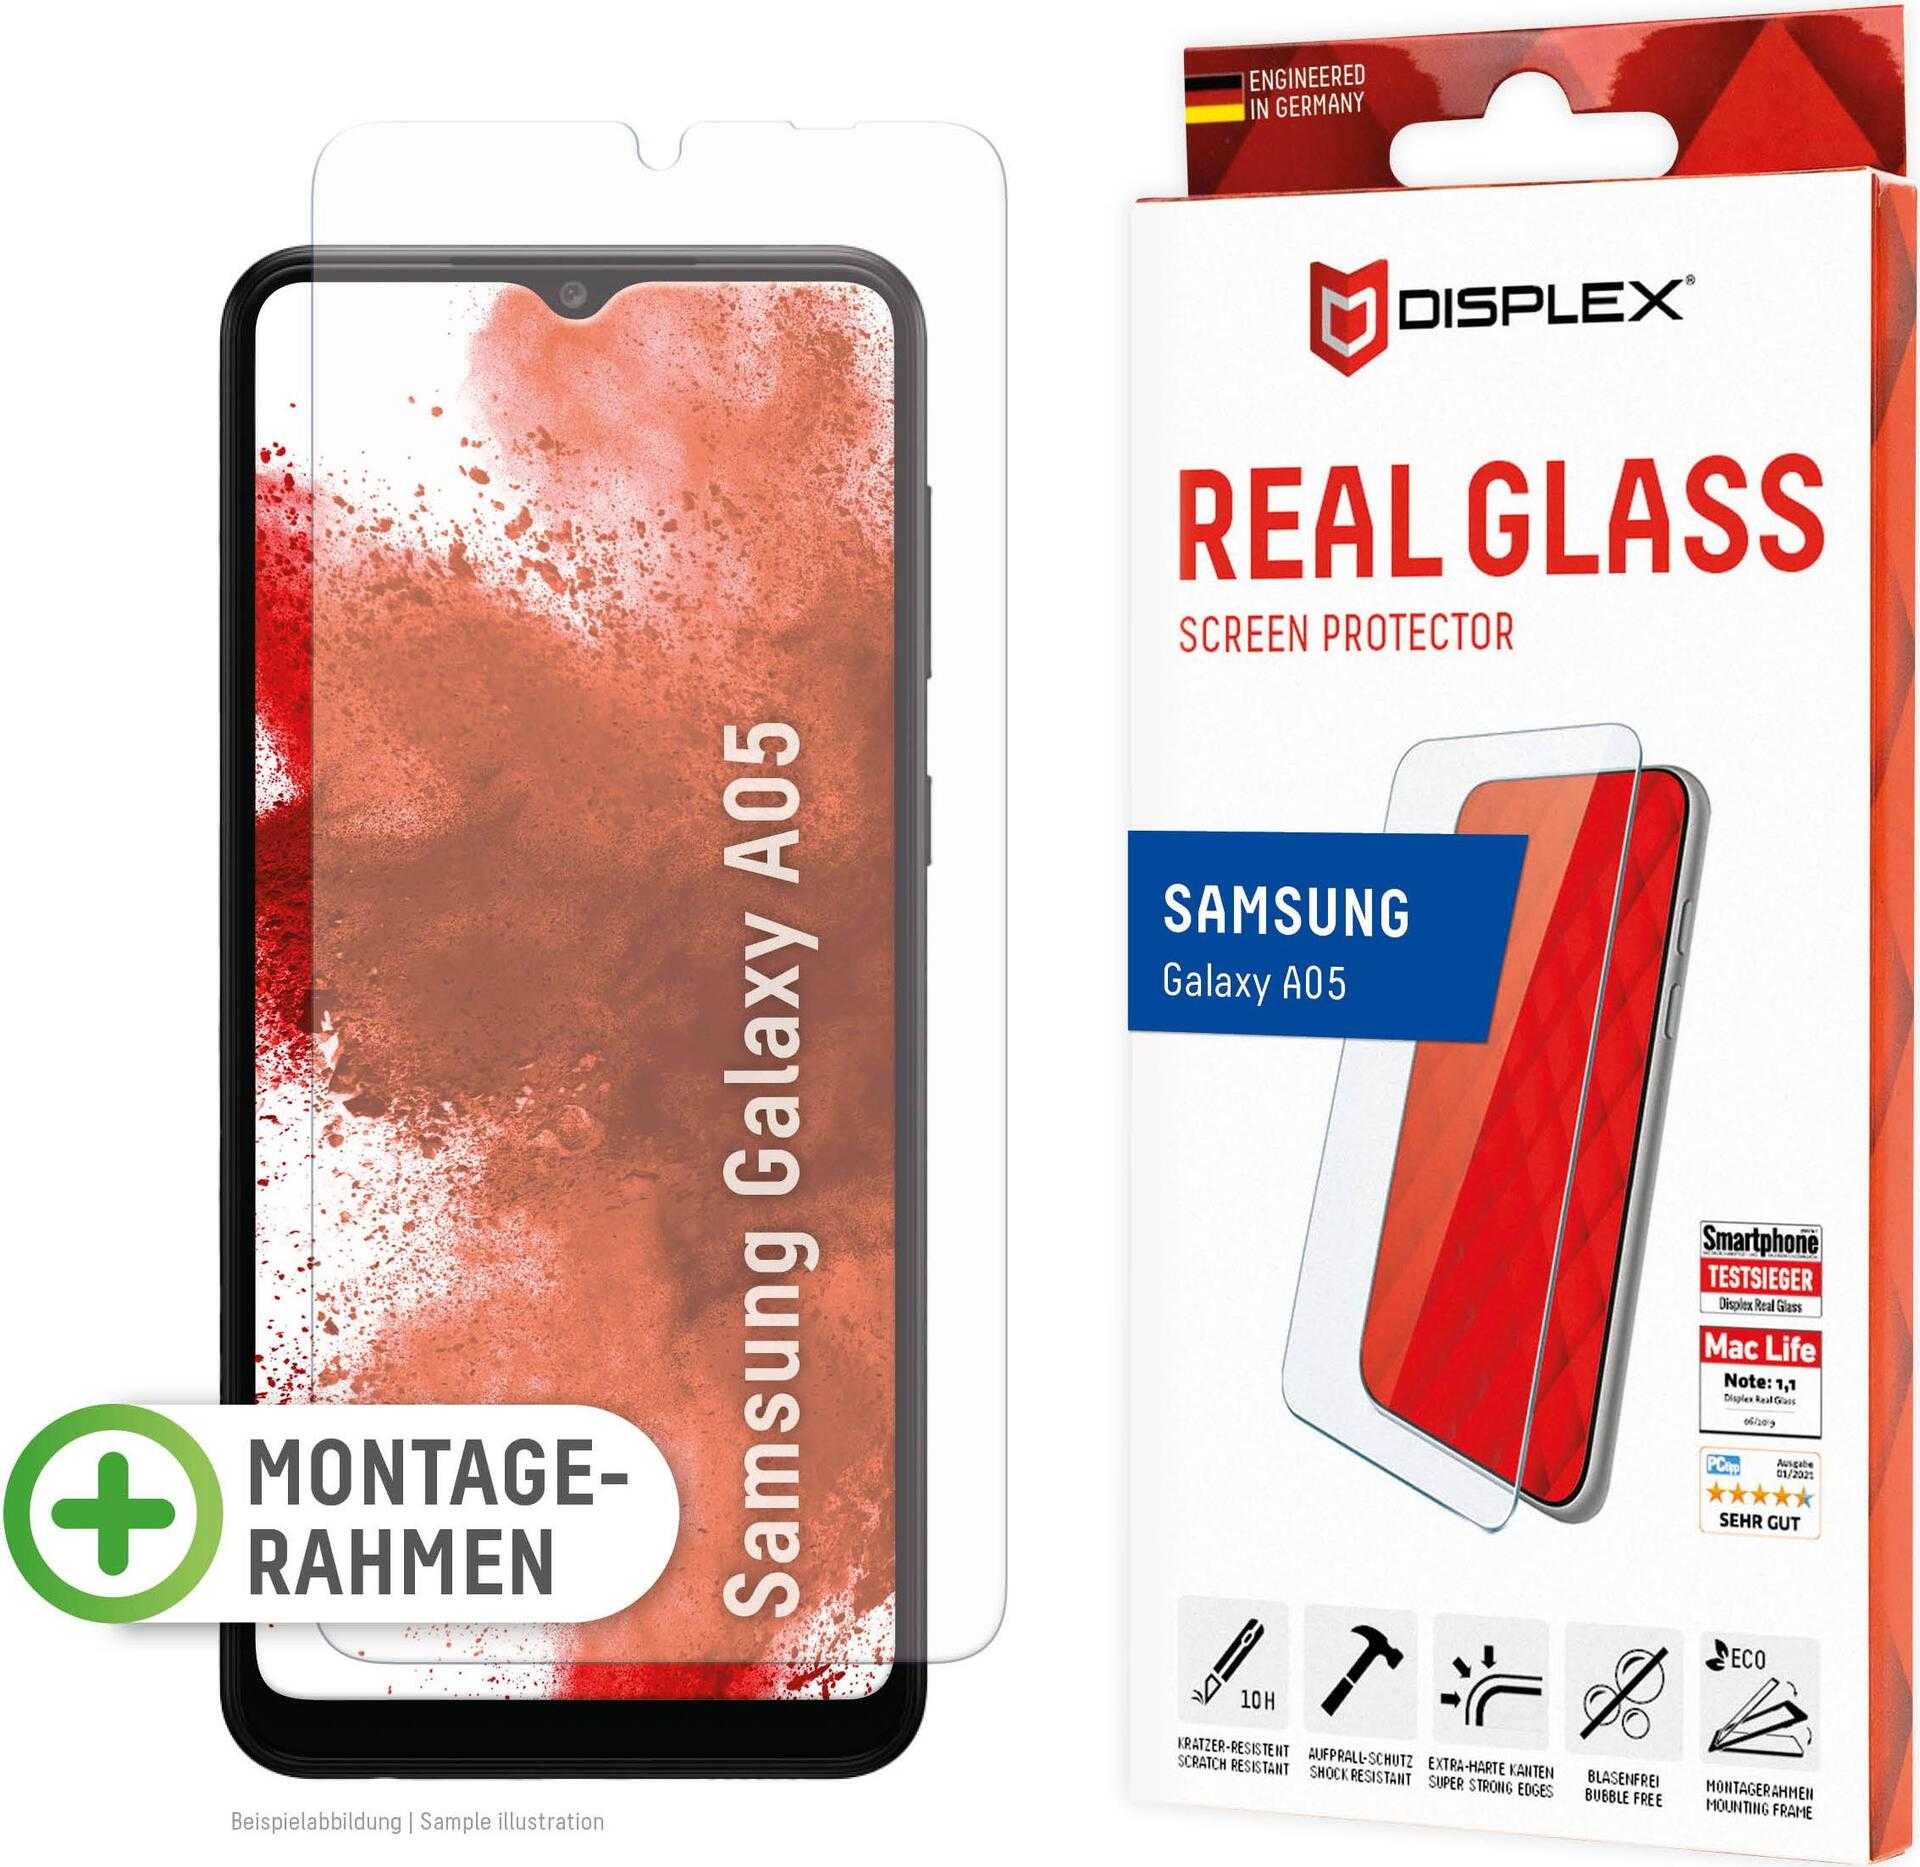 Displex Panzerglas (10H - 2D) für Samsung Galaxy A05 - Eco-Montagerahmen - kratzer-resistent - Samsung - Galaxy A05 - Trockene Anwendung - Staubresistent - Schlagfest - Kratzresistent - Schockresistent - Transparent - 1 Stück(e) (01884)